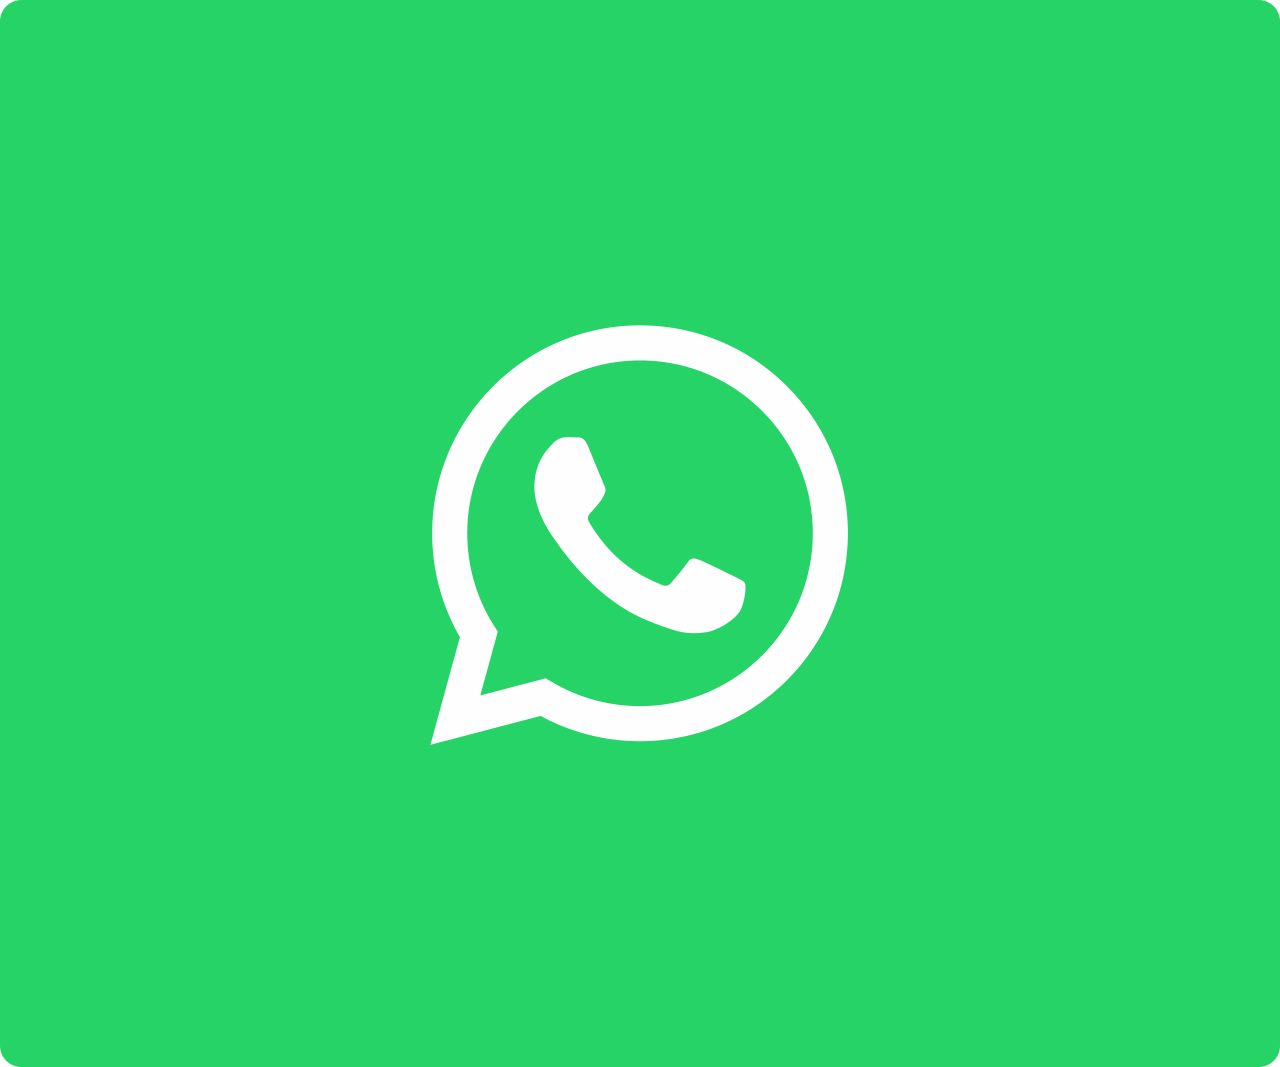 "El teu número de telèfon està suspès": el nou missatge que envia WhatsApp